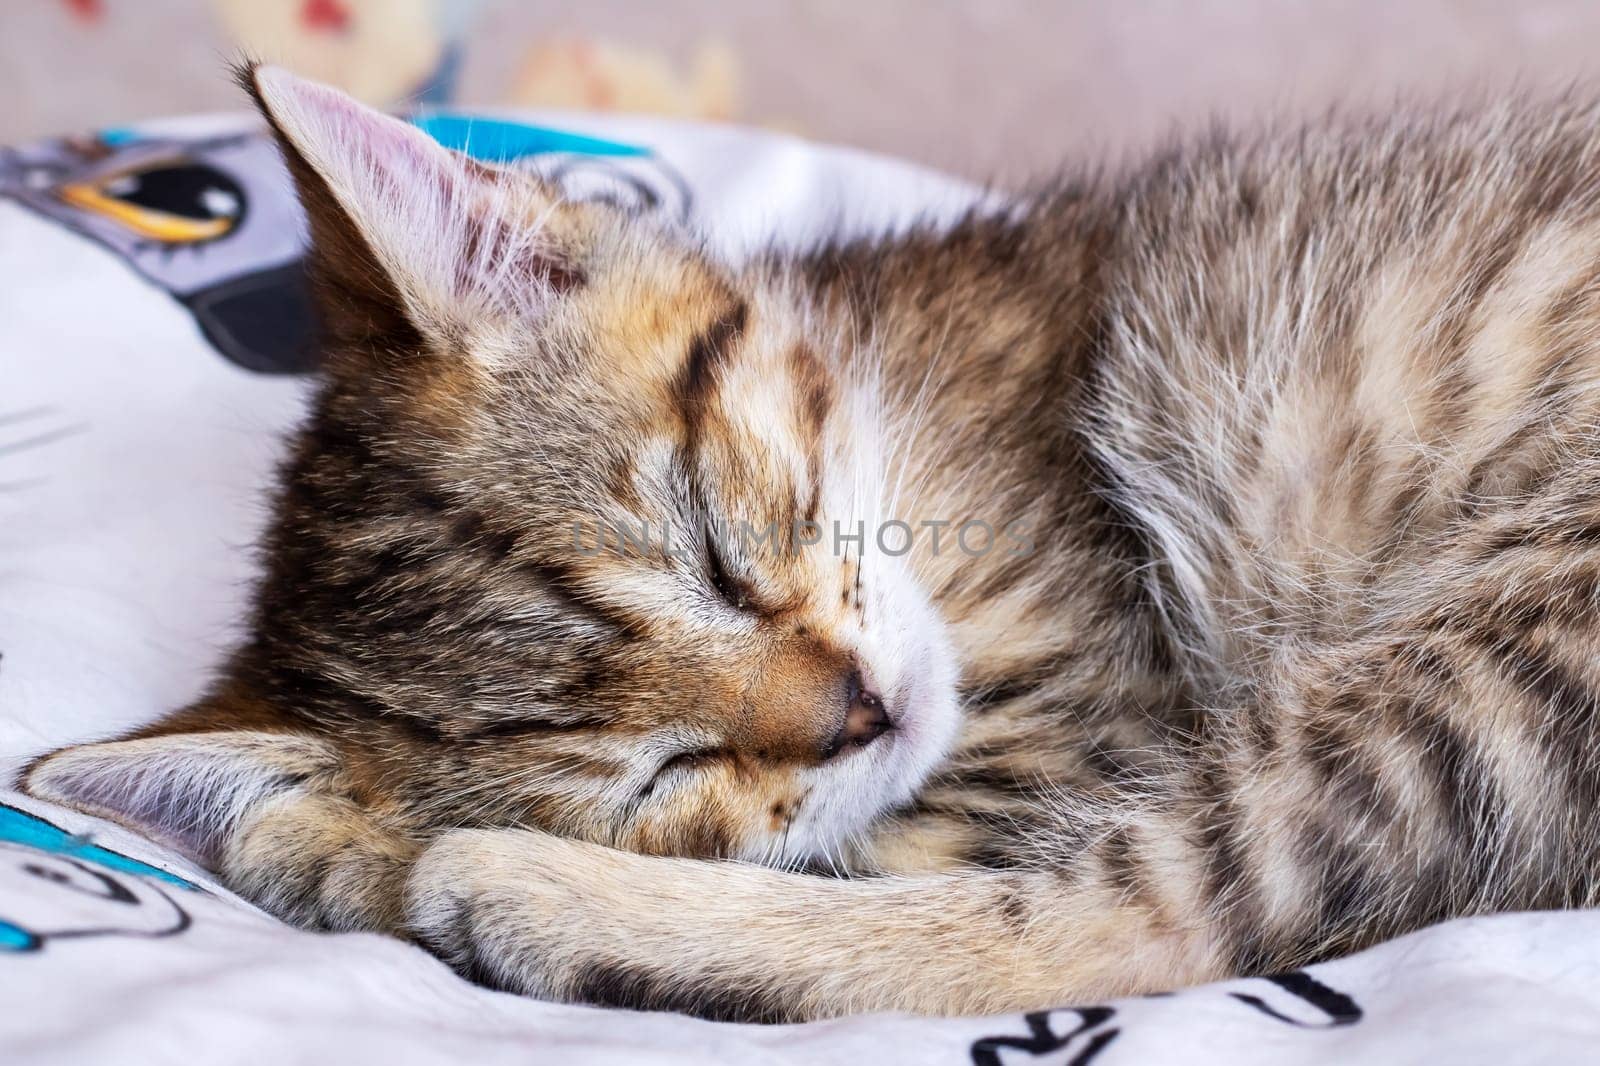 Little tabby kitten sleeping at home closeup by Vera1703